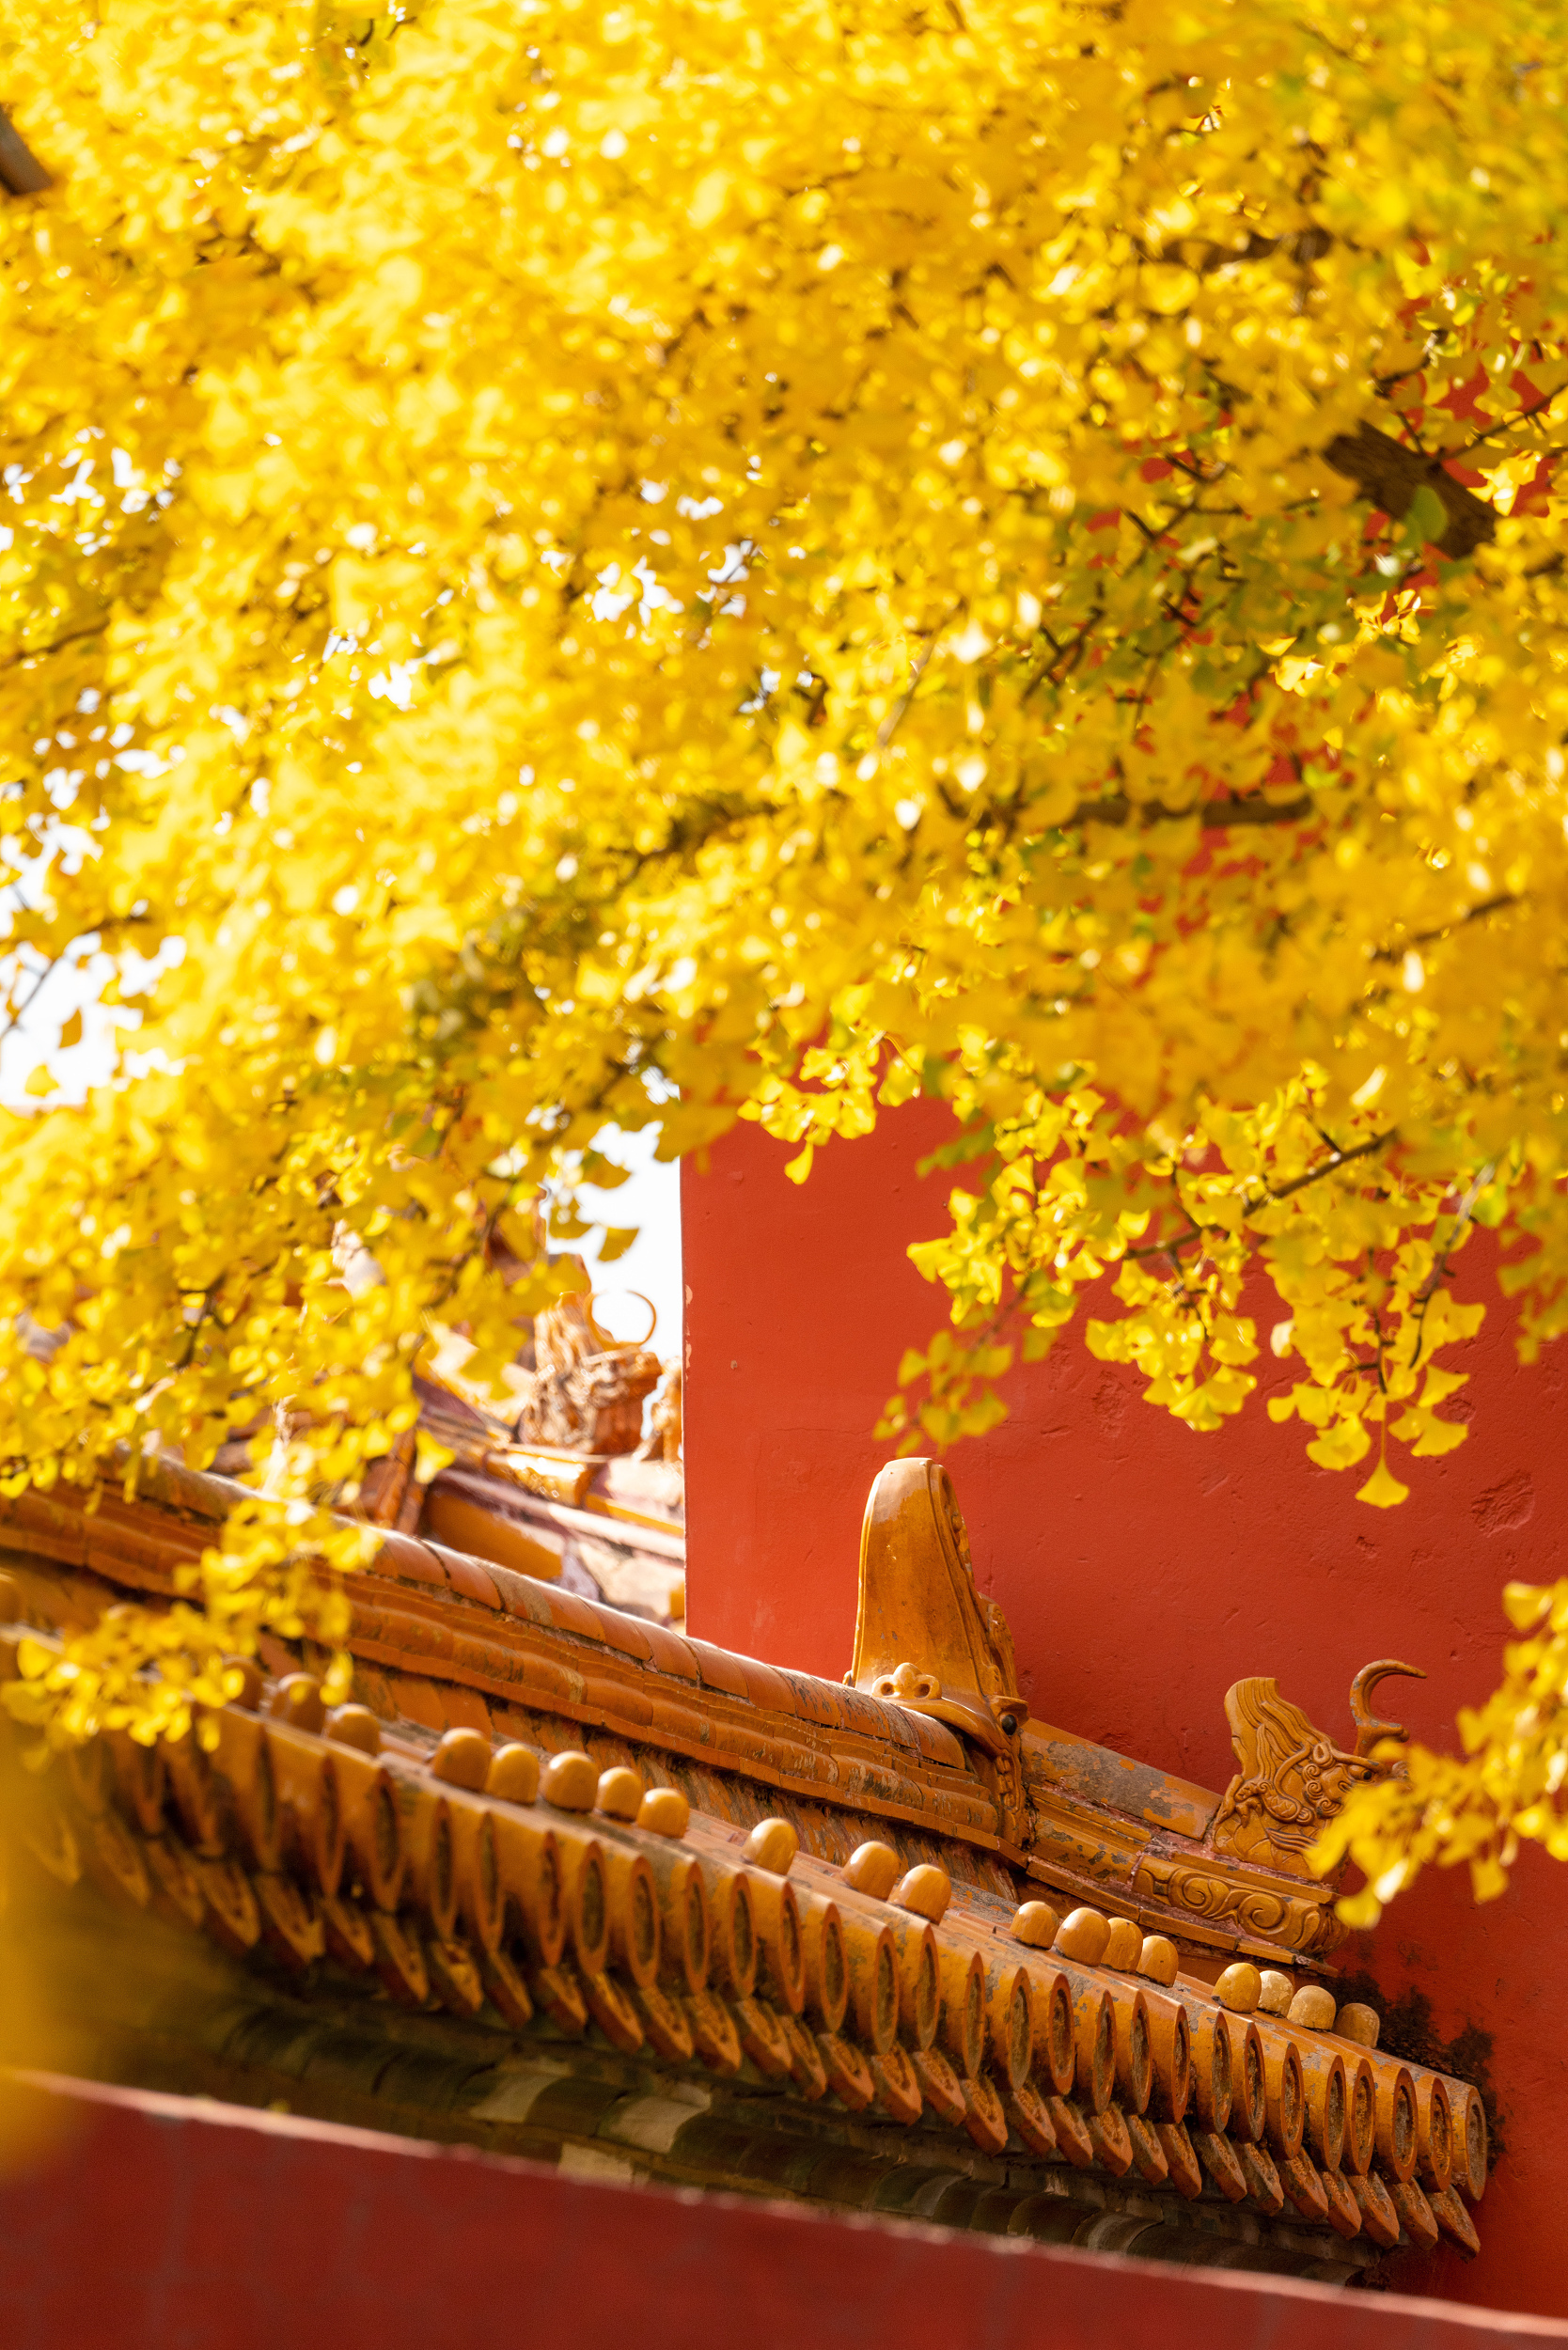 故宫秋天的景色图片